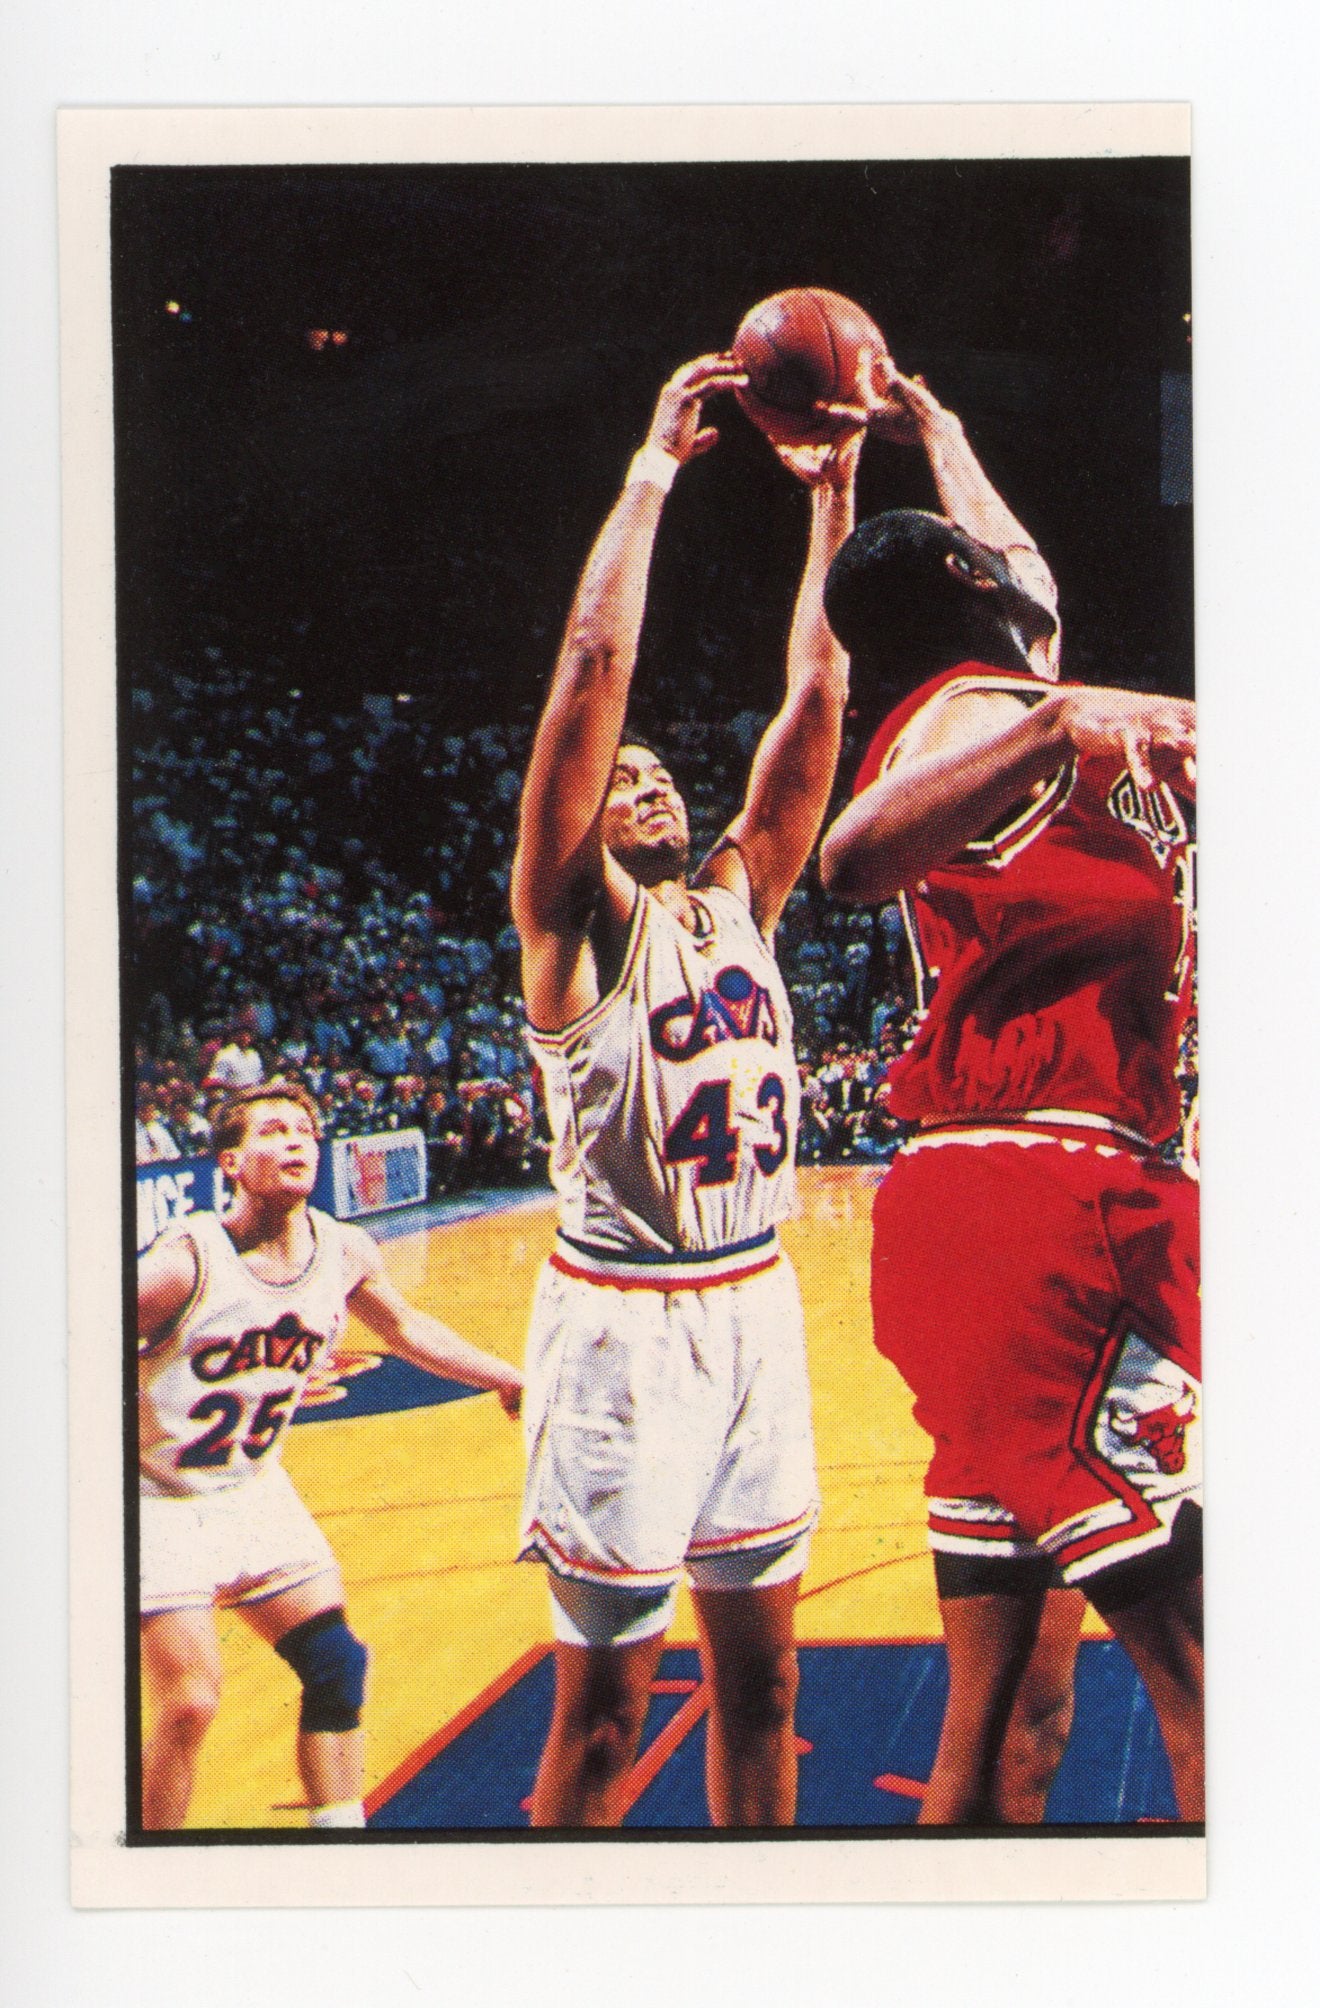 Eastern Playoffs Panini 1992-1993 Basketball Sticker #13